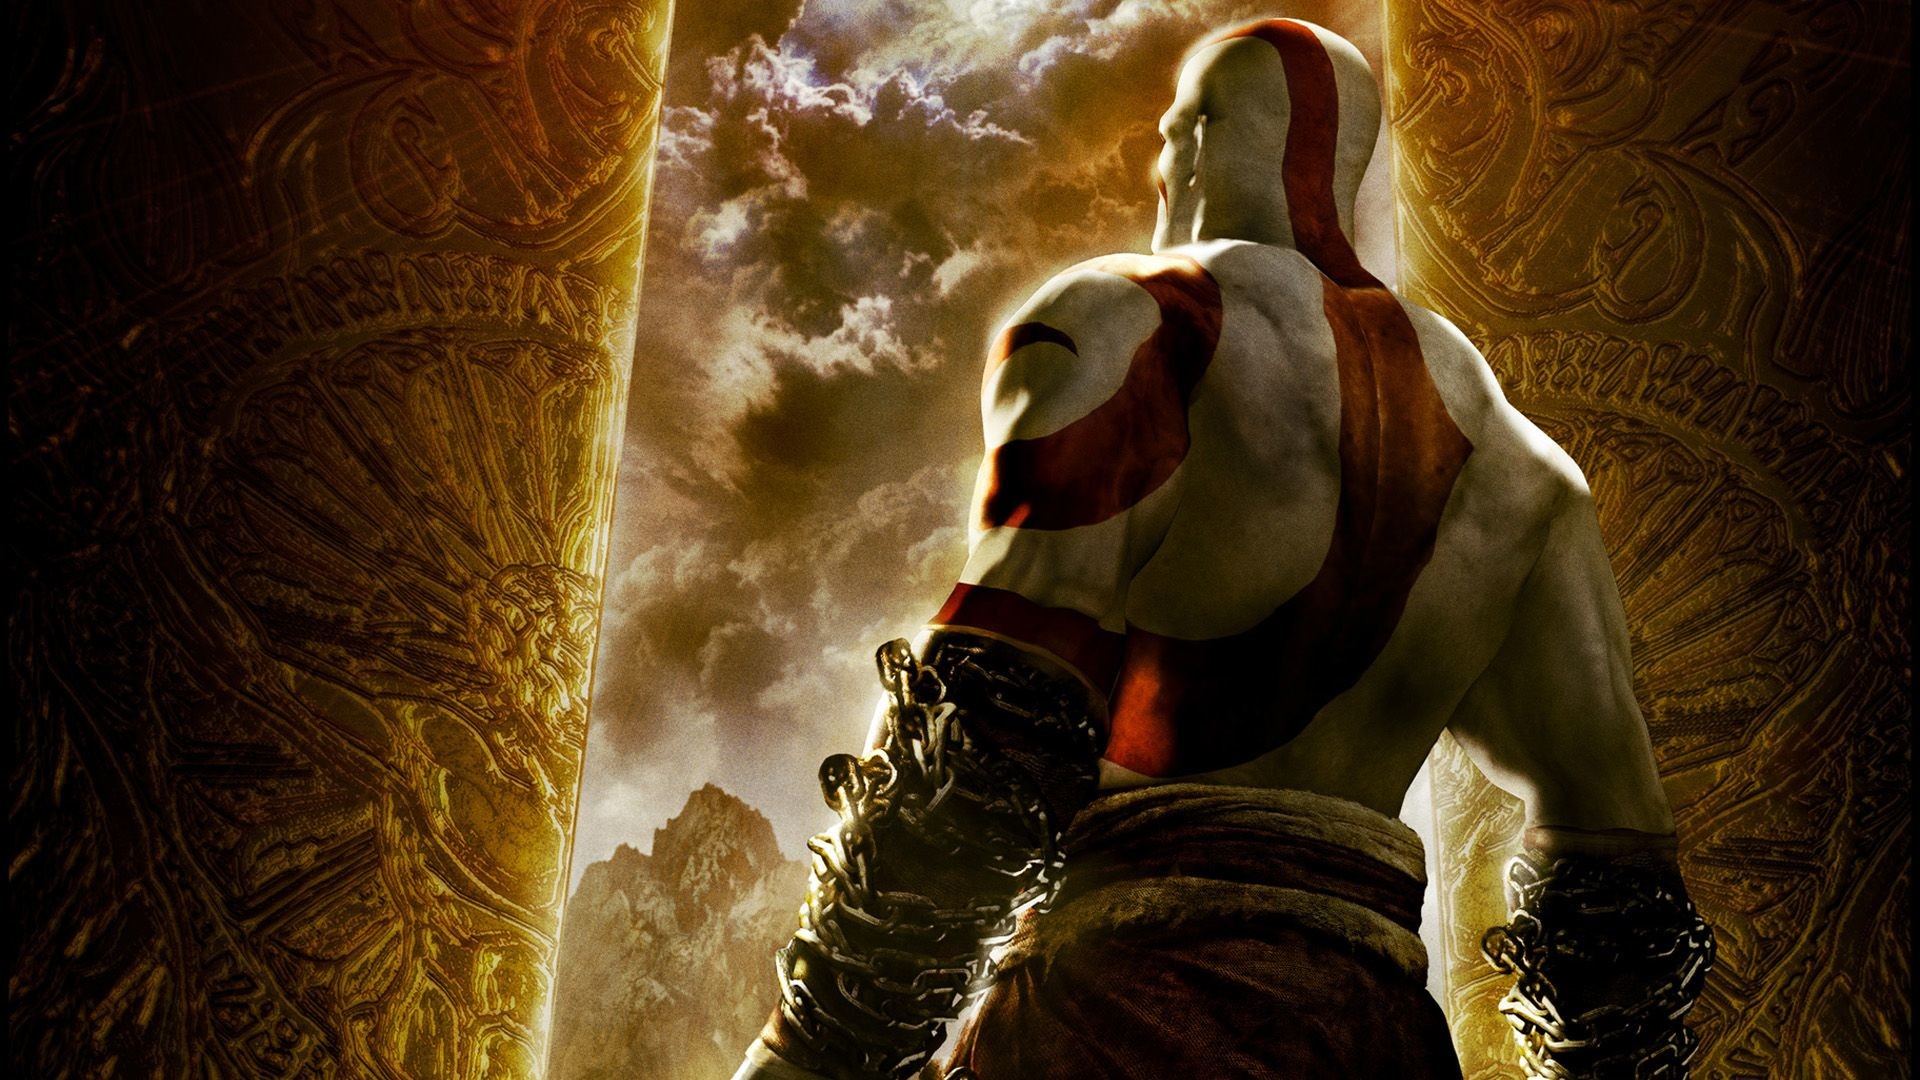 fondo de pantalla god of war 3,juego de acción y aventura,cg artwork,personaje de ficción,demonio,ilustración